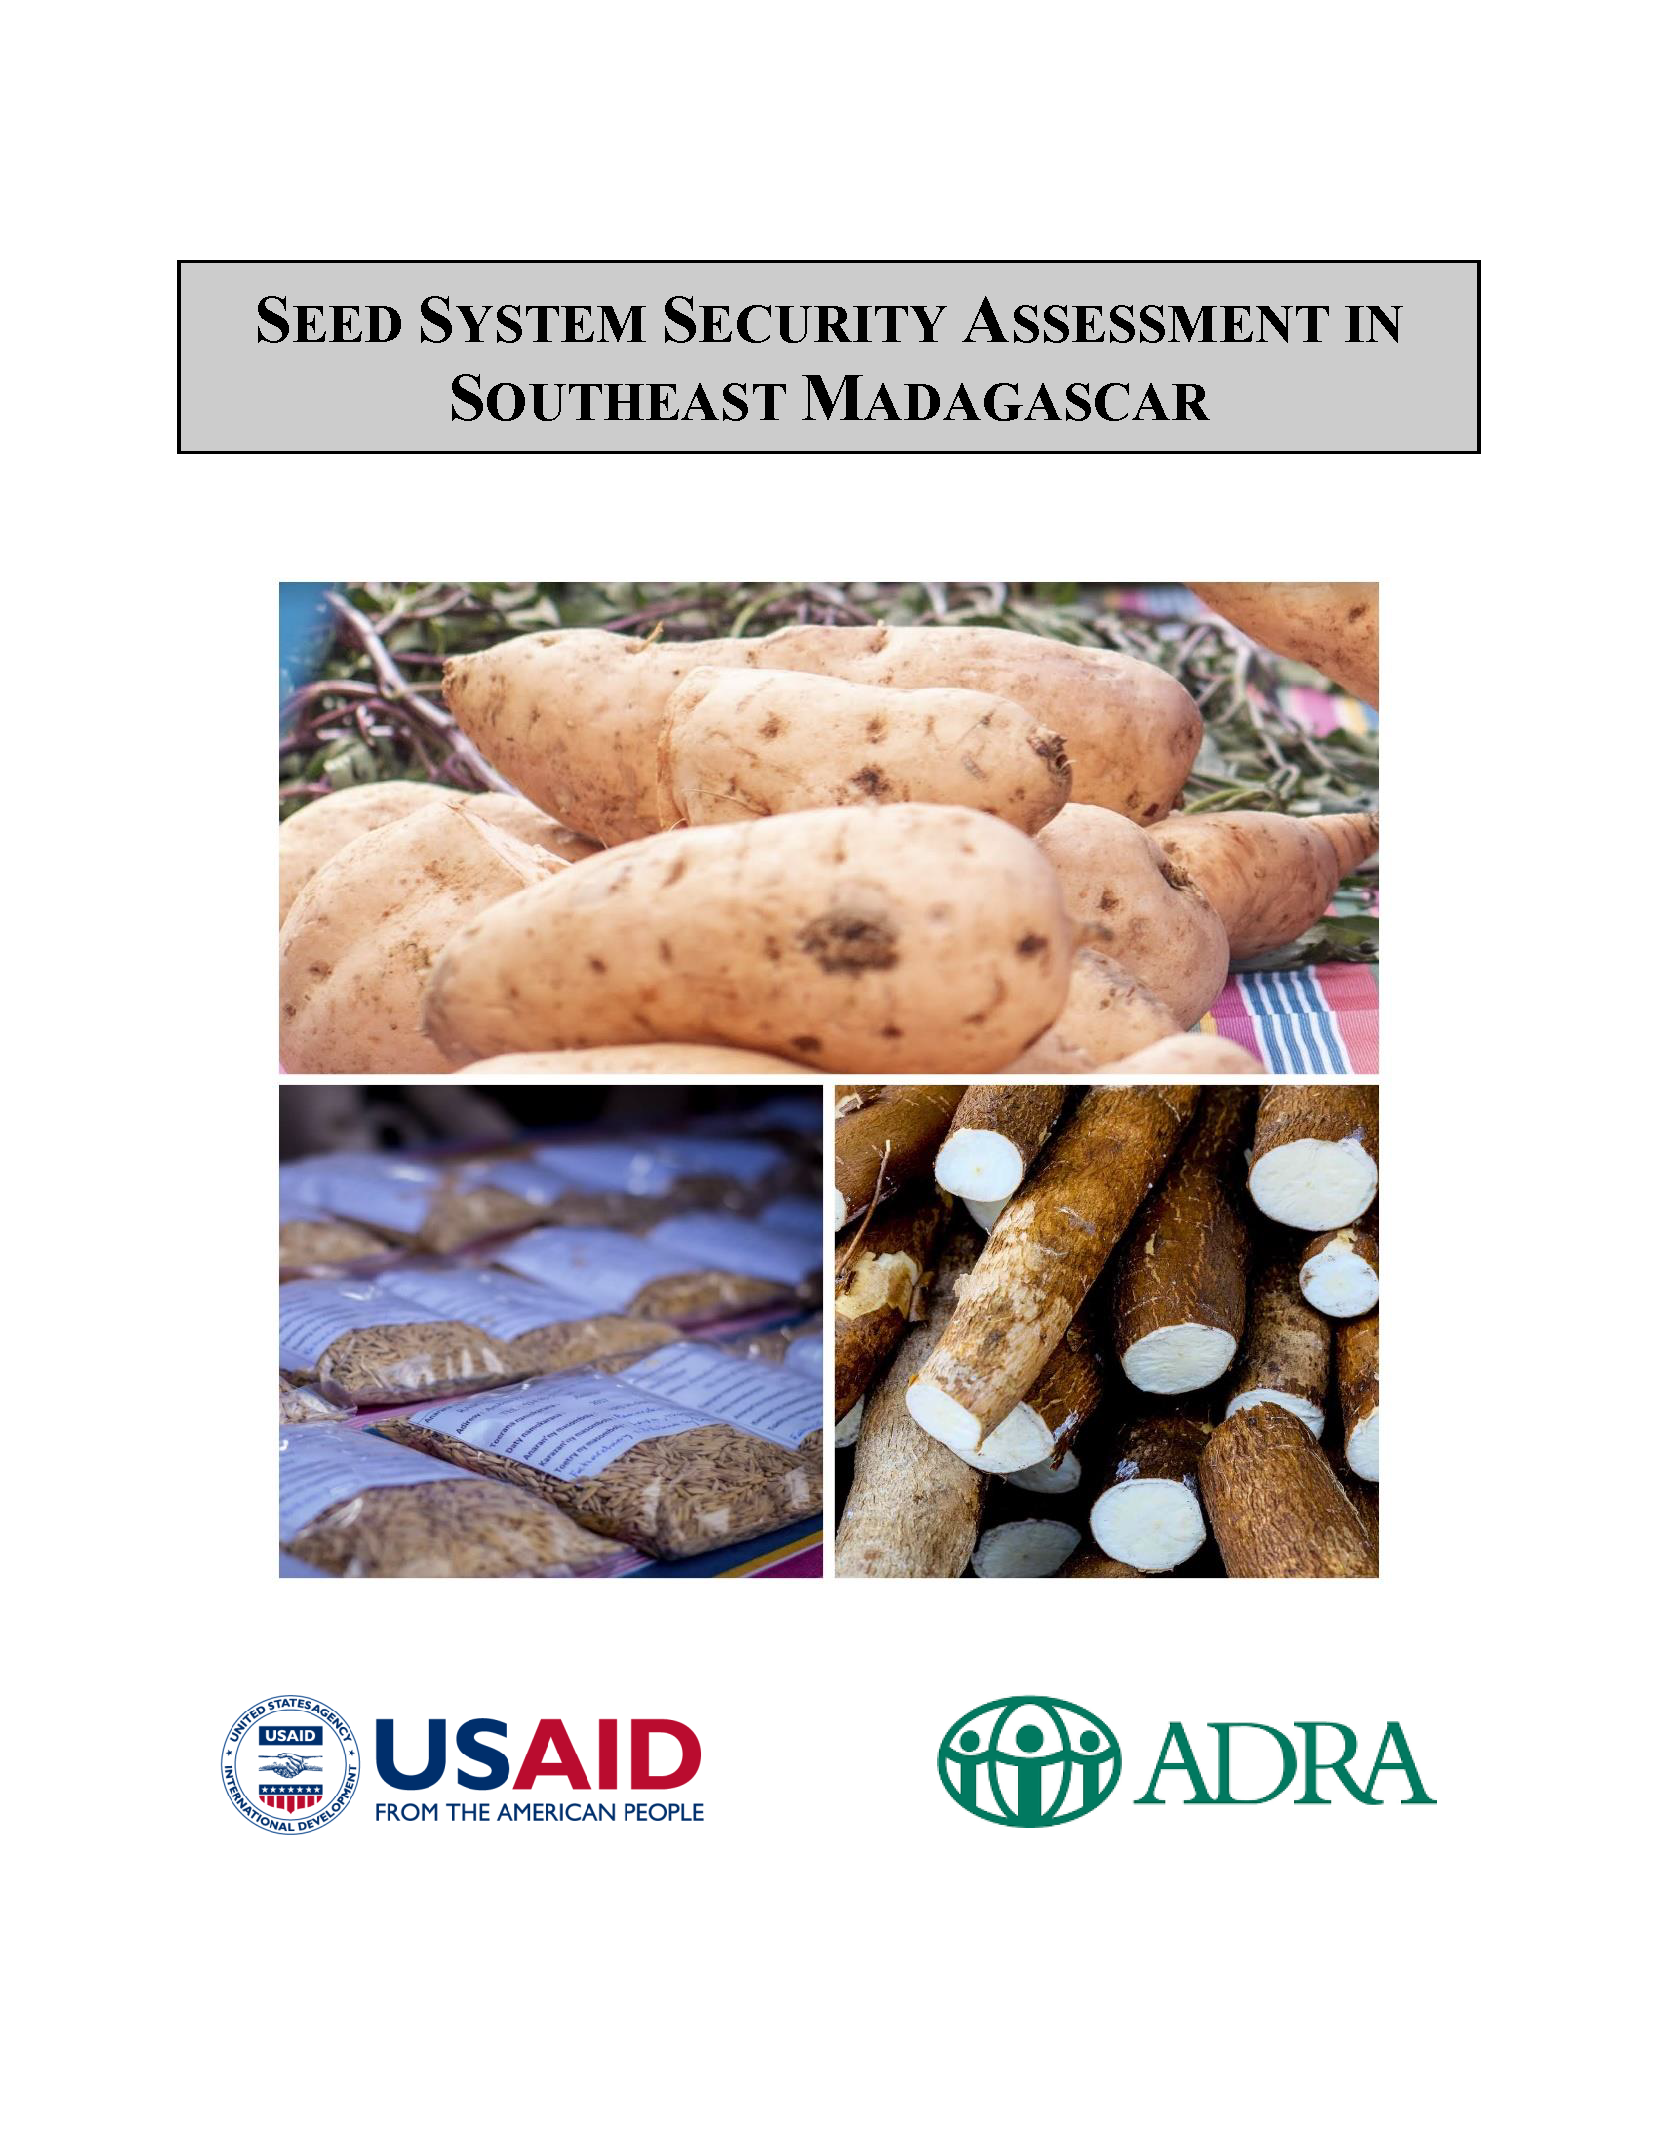 Page de couverture de l’évaluation de la sécurité du système semencier dans le sud-est de Madagascar